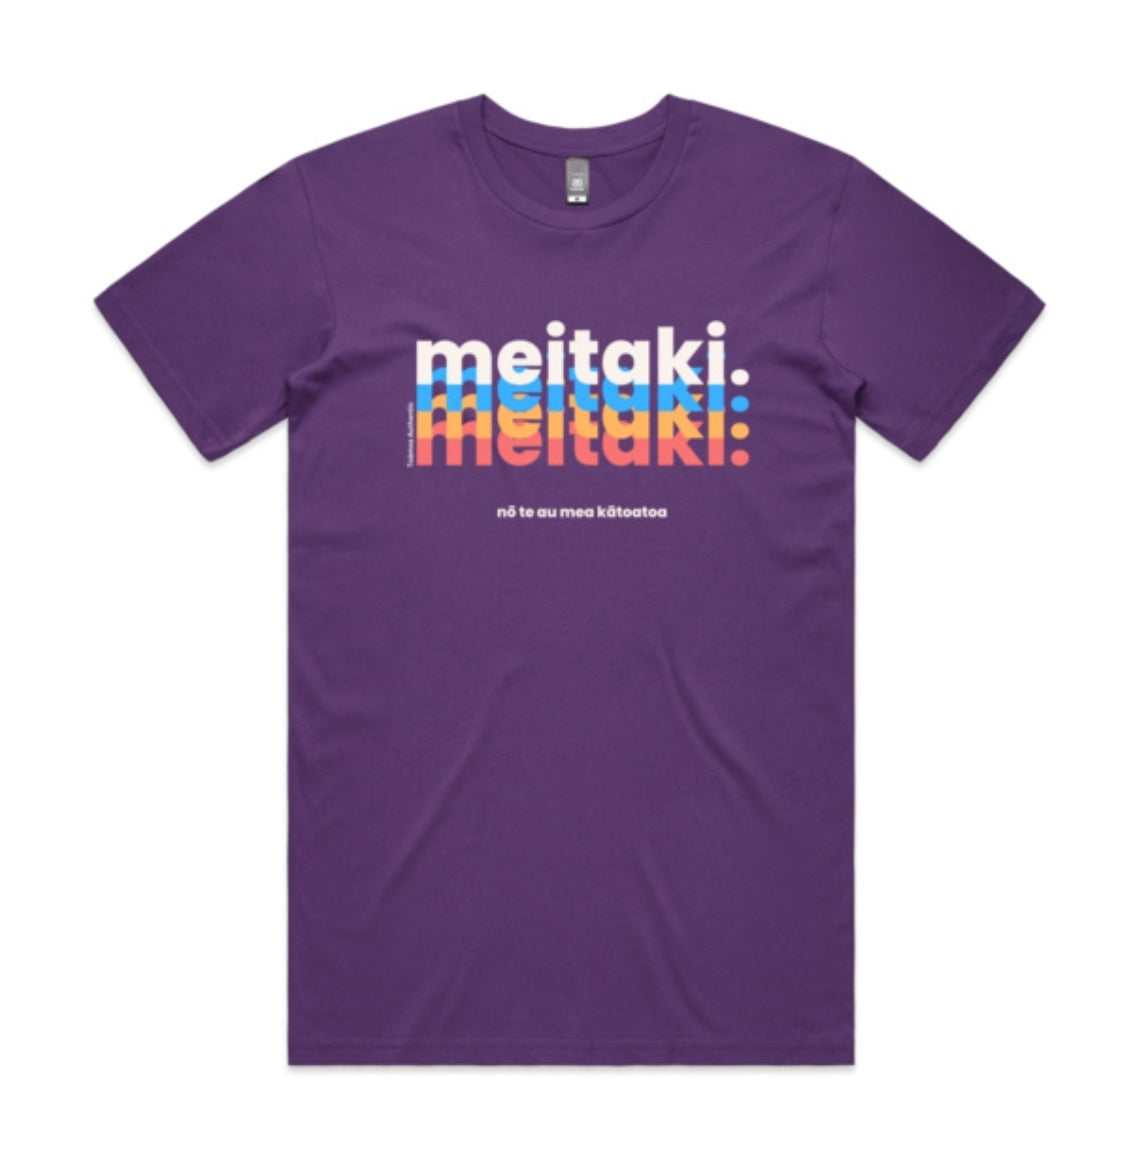 Meitaki Nō Te Au Mea Kātoatoa - Everything good is Meitaki! (Men's Tee)